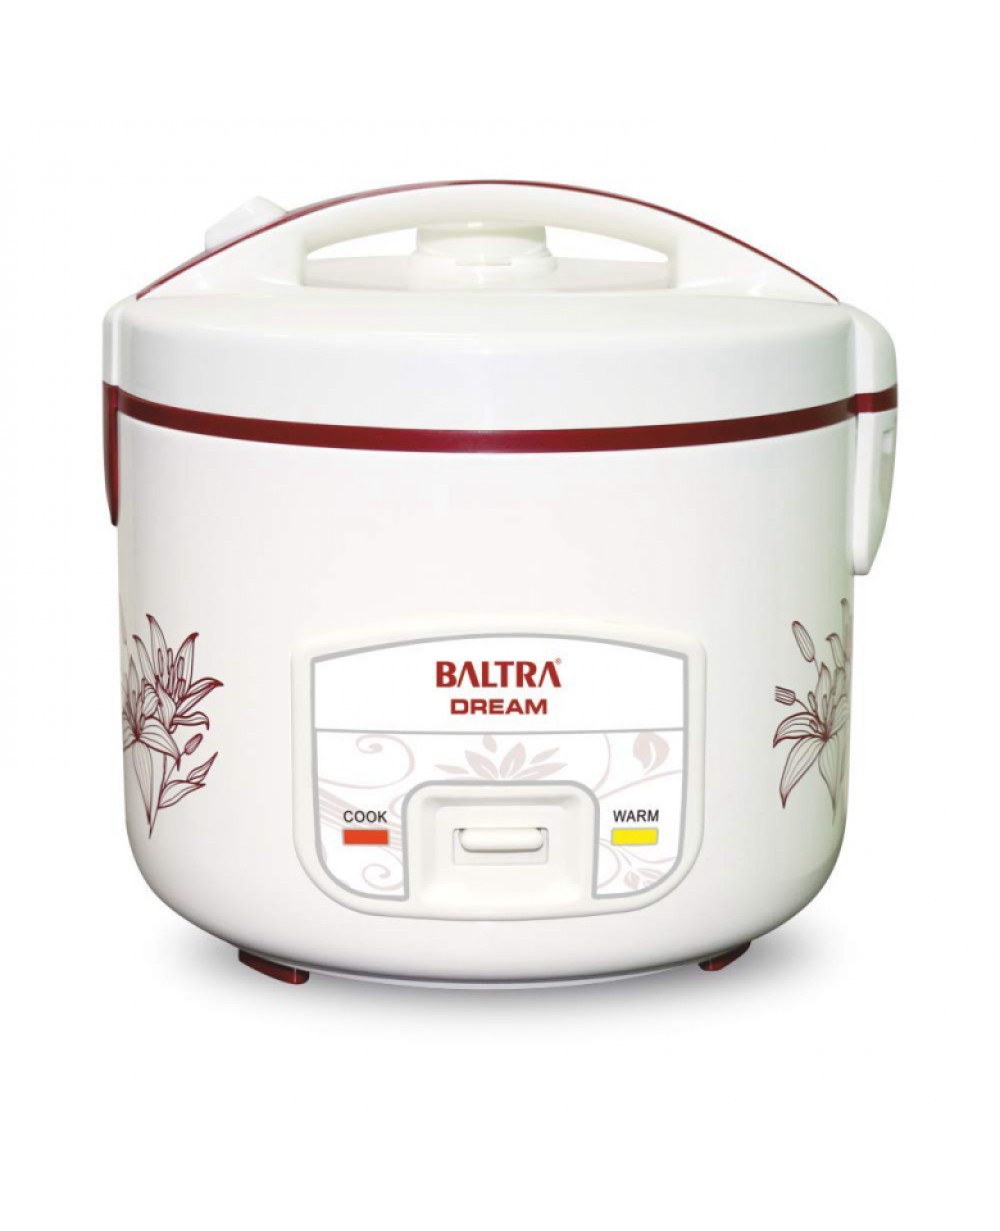 Baltra Deluxe Rice Cooker Btd 500d Dream